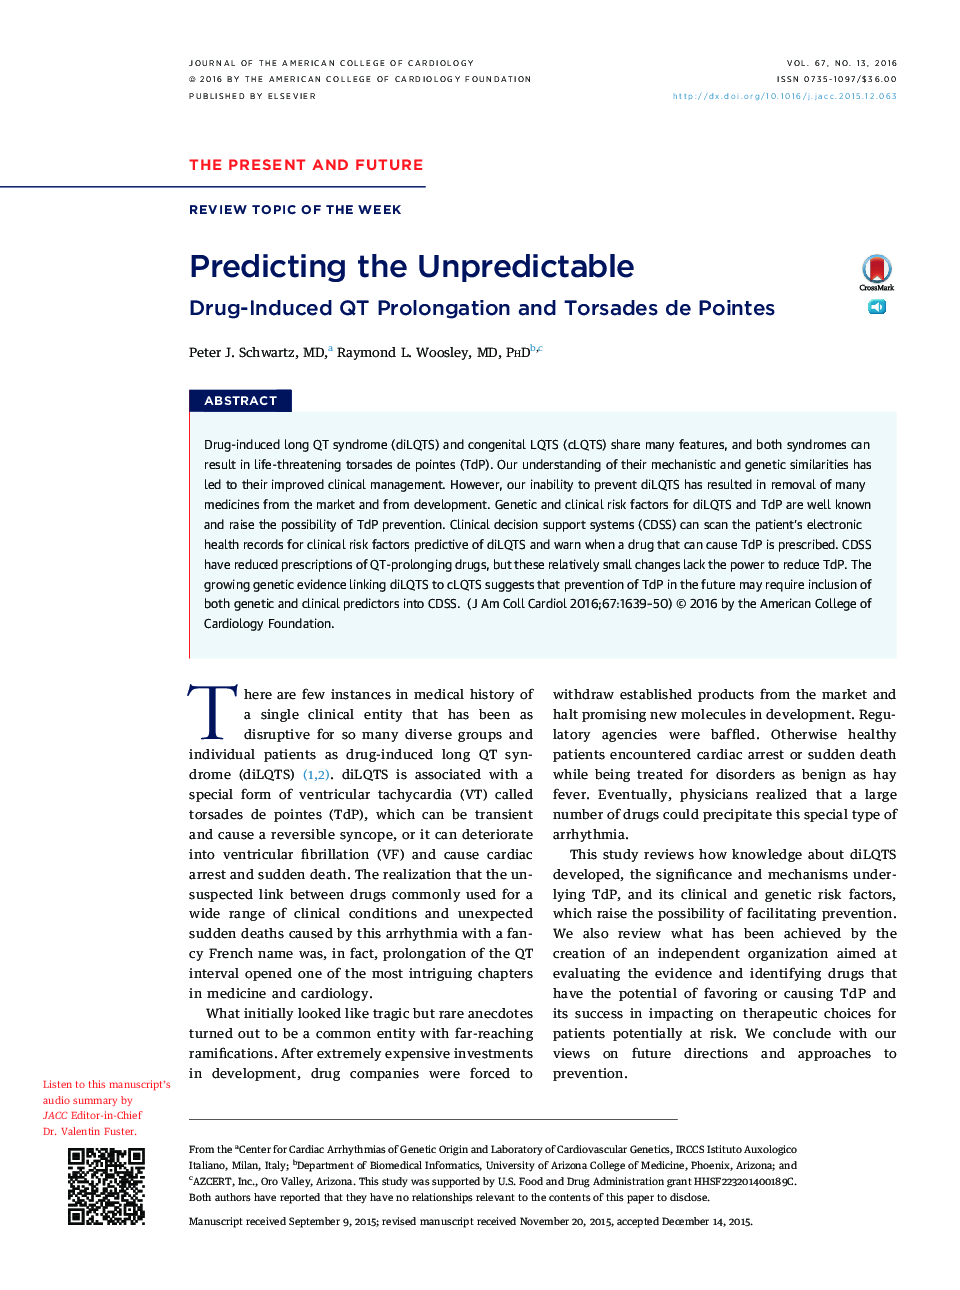 Predicting the Unpredictable: Drug-Induced QT Prolongation and Torsades de Pointes